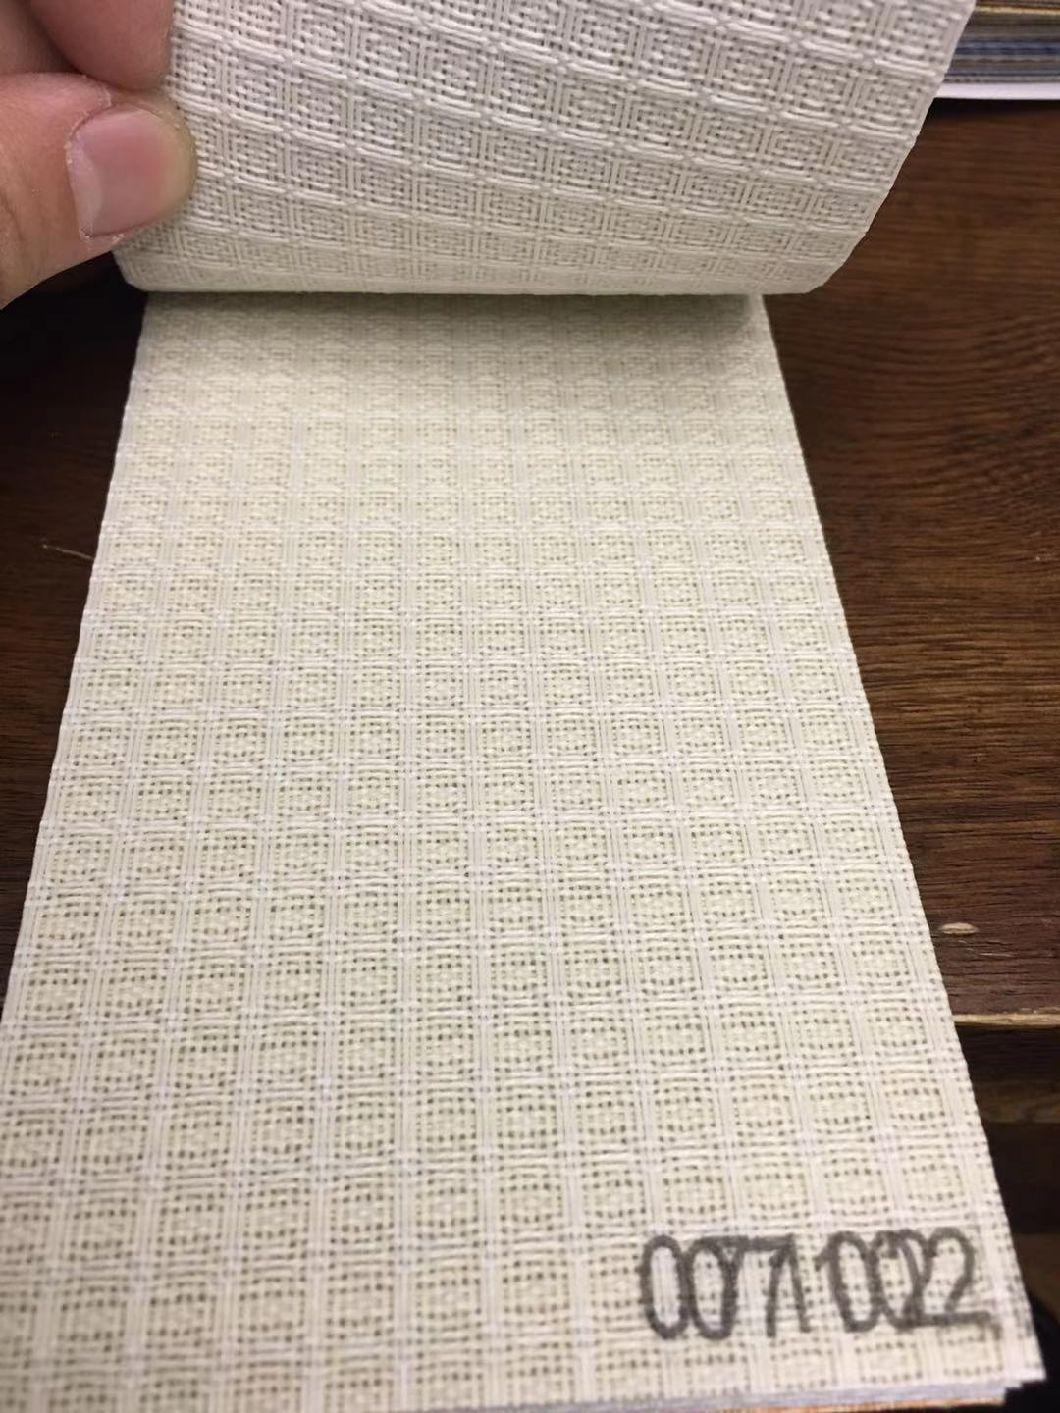 V17 Vertical Blinds Fabric